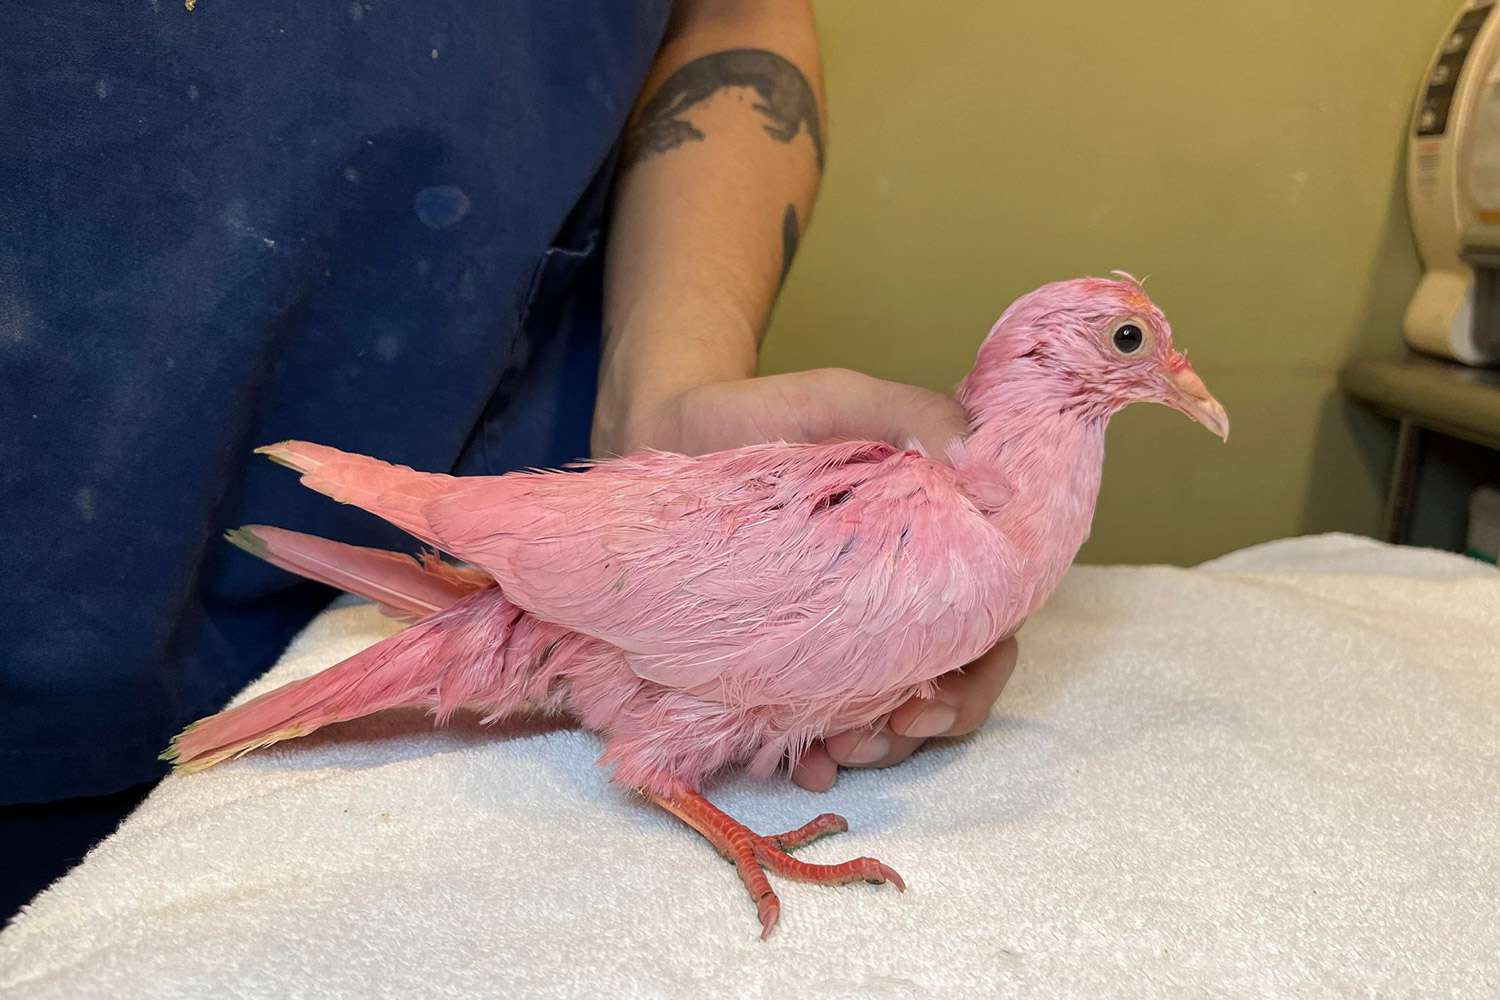 एनिमल रेस्क्यू ने 'संघर्ष' के बाद 'नेवर डाई ए बर्ड' की चेतावनी दी 'गुलाबी कबूतर न्यूयॉर्क में भटक रहा है